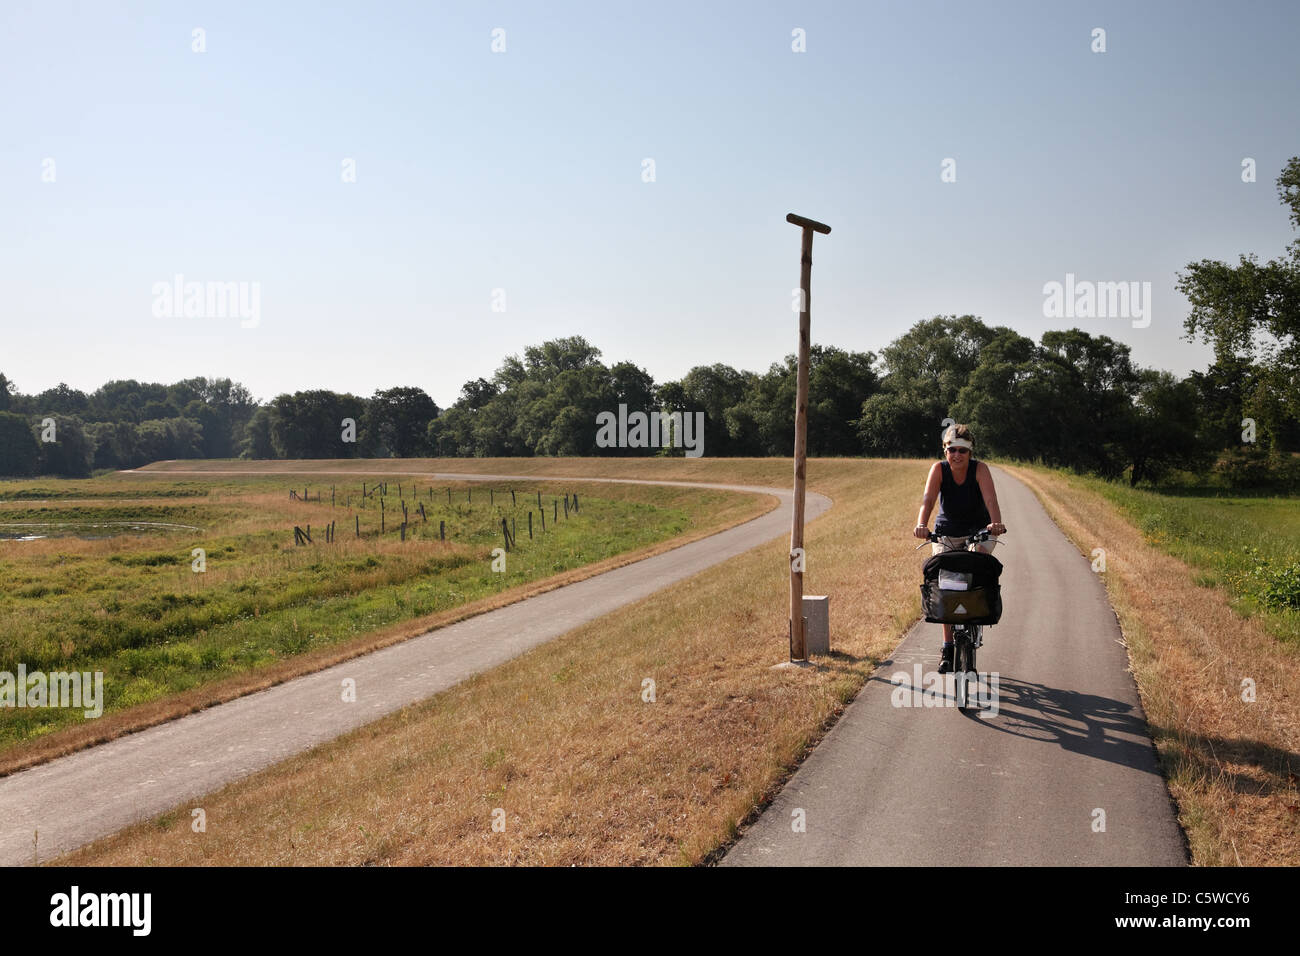 Ein Reifen weiblichen Radfahrer auf einem Brompton folding Radtouren entlang der Deiche oder Deich verlassen Bälow auf der Elbe Zyklus verfolgen Deutschland. Stockfoto